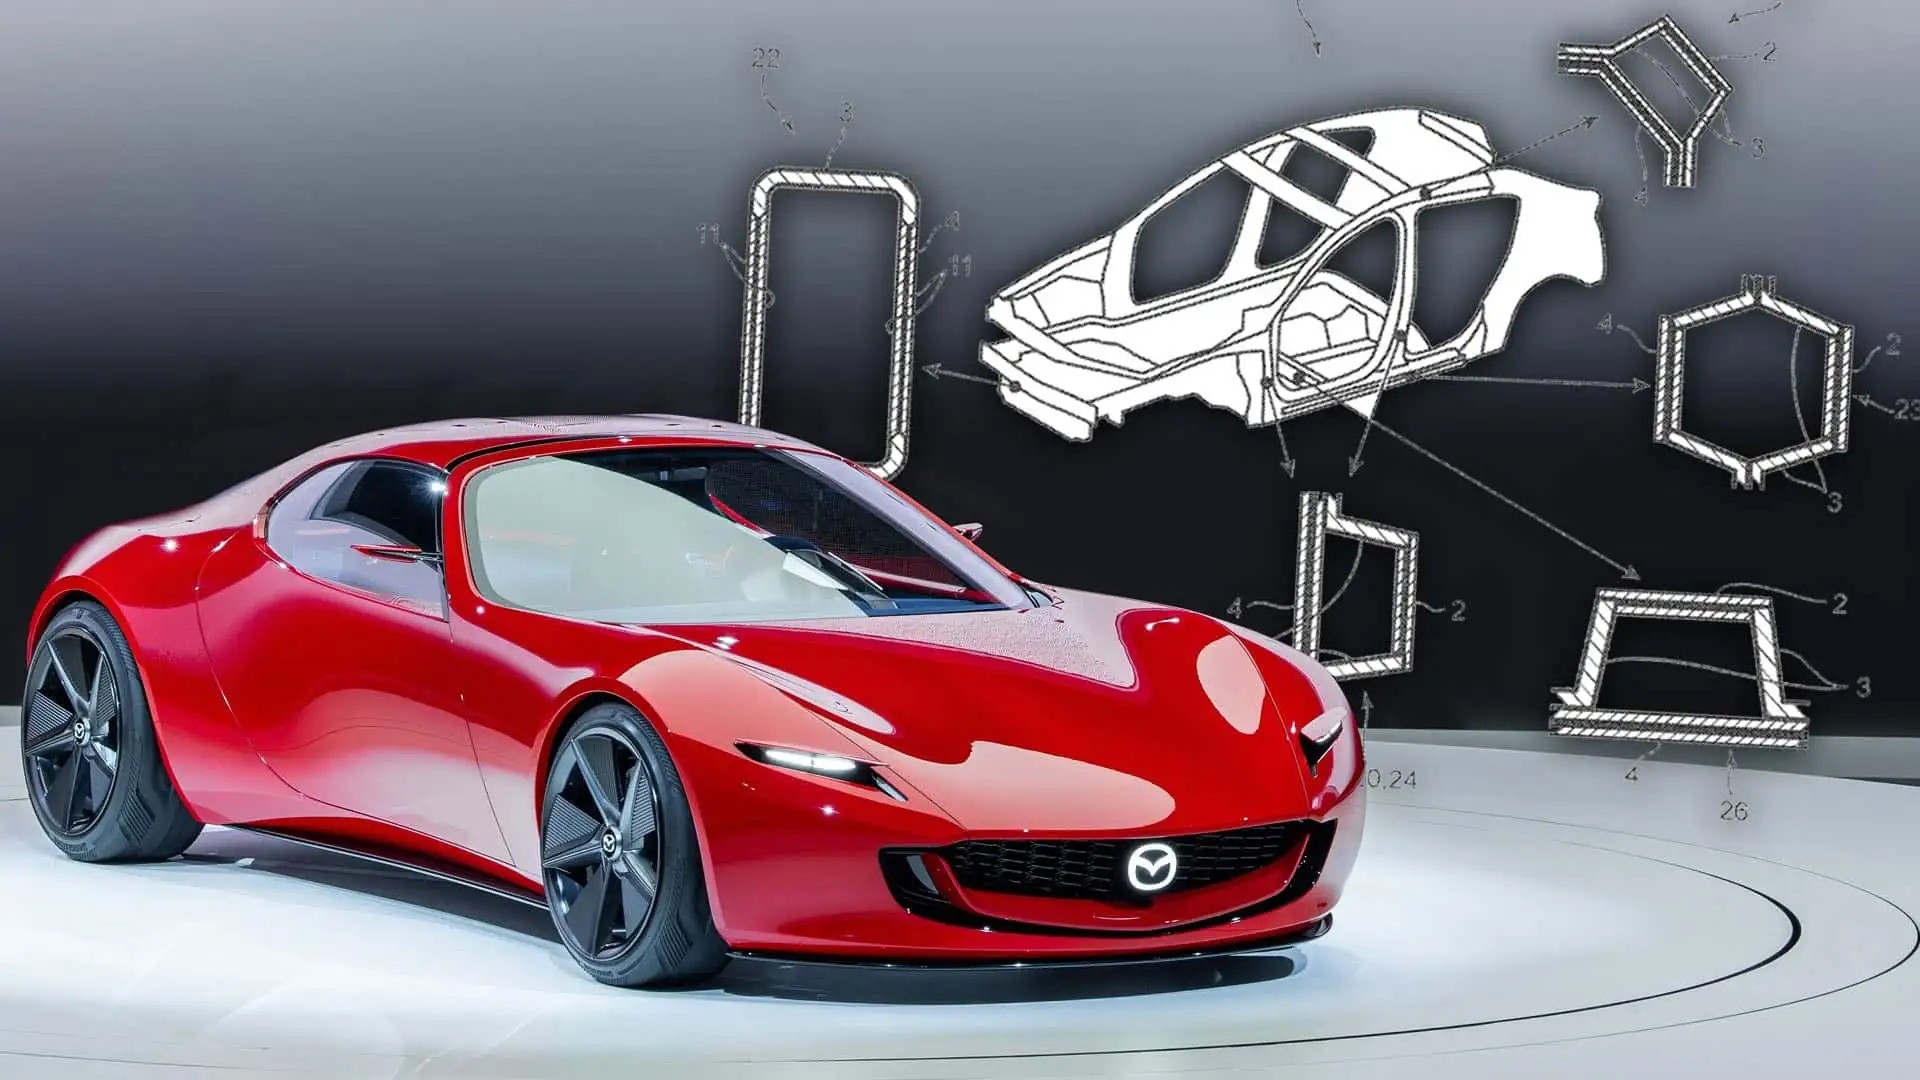 Ai chê xe Mazda thiếu chắc chắn sẽ thích điều này: Hãng tính chơi lớn, làm khung gầm carbon như trên siêu xe- Ảnh 1.